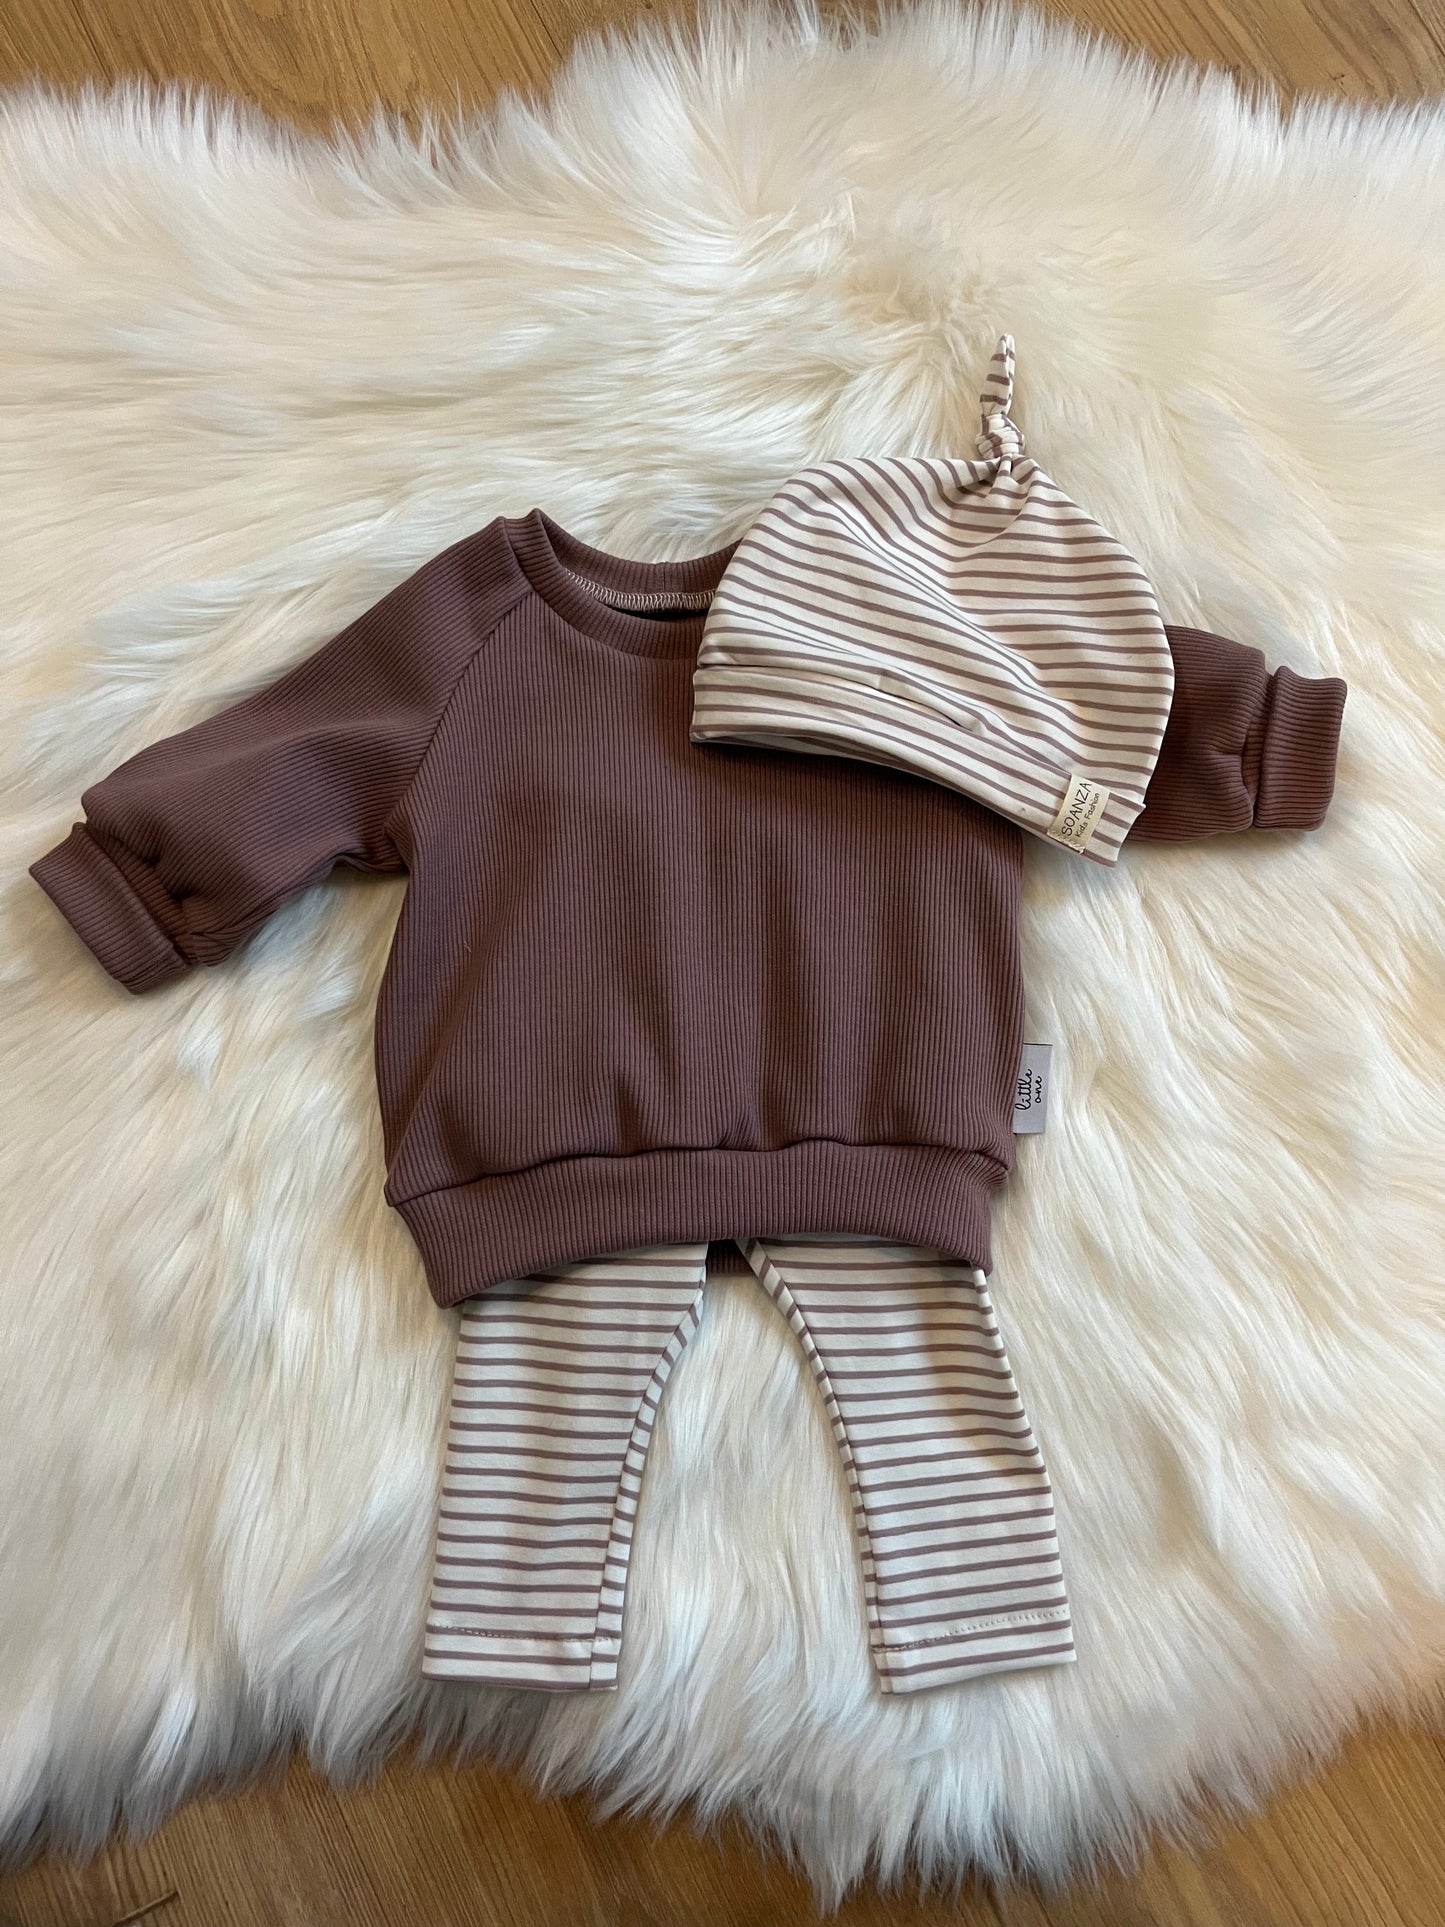 Outfits Stripes aus der Newborncollection